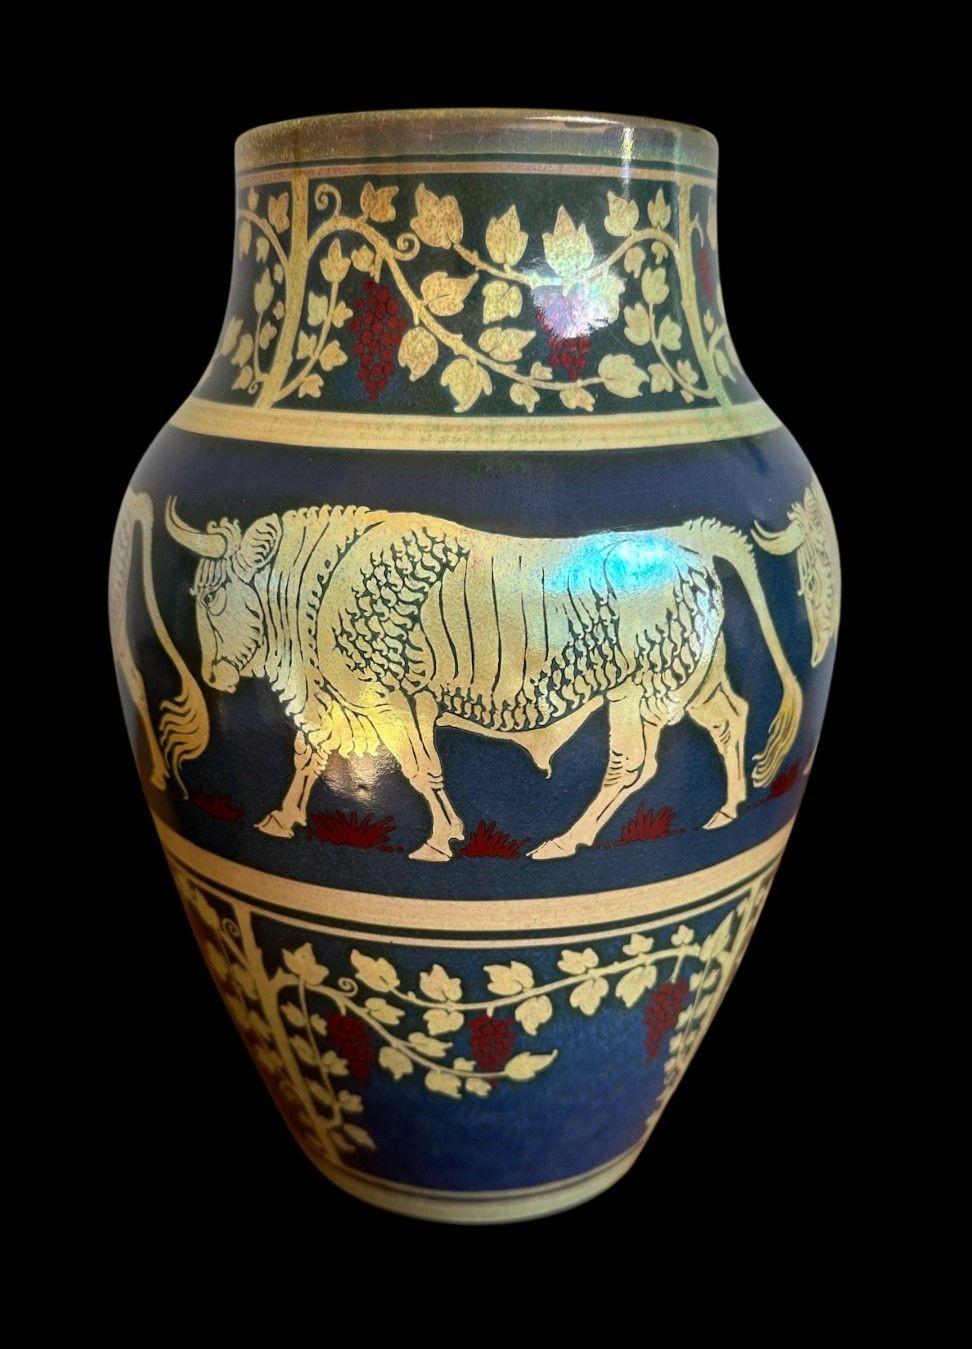 5486
Große Pilkington's Royal Lancastrian Lustre Vase mit hervorragendem Brand, verziert mit Stieren zwischen einem Band aus Weinreben von Richard Joyce.
27cm hoch, 18cm breit
Fritte auf den Fußrand glasieren
Datumsziffer für 1910